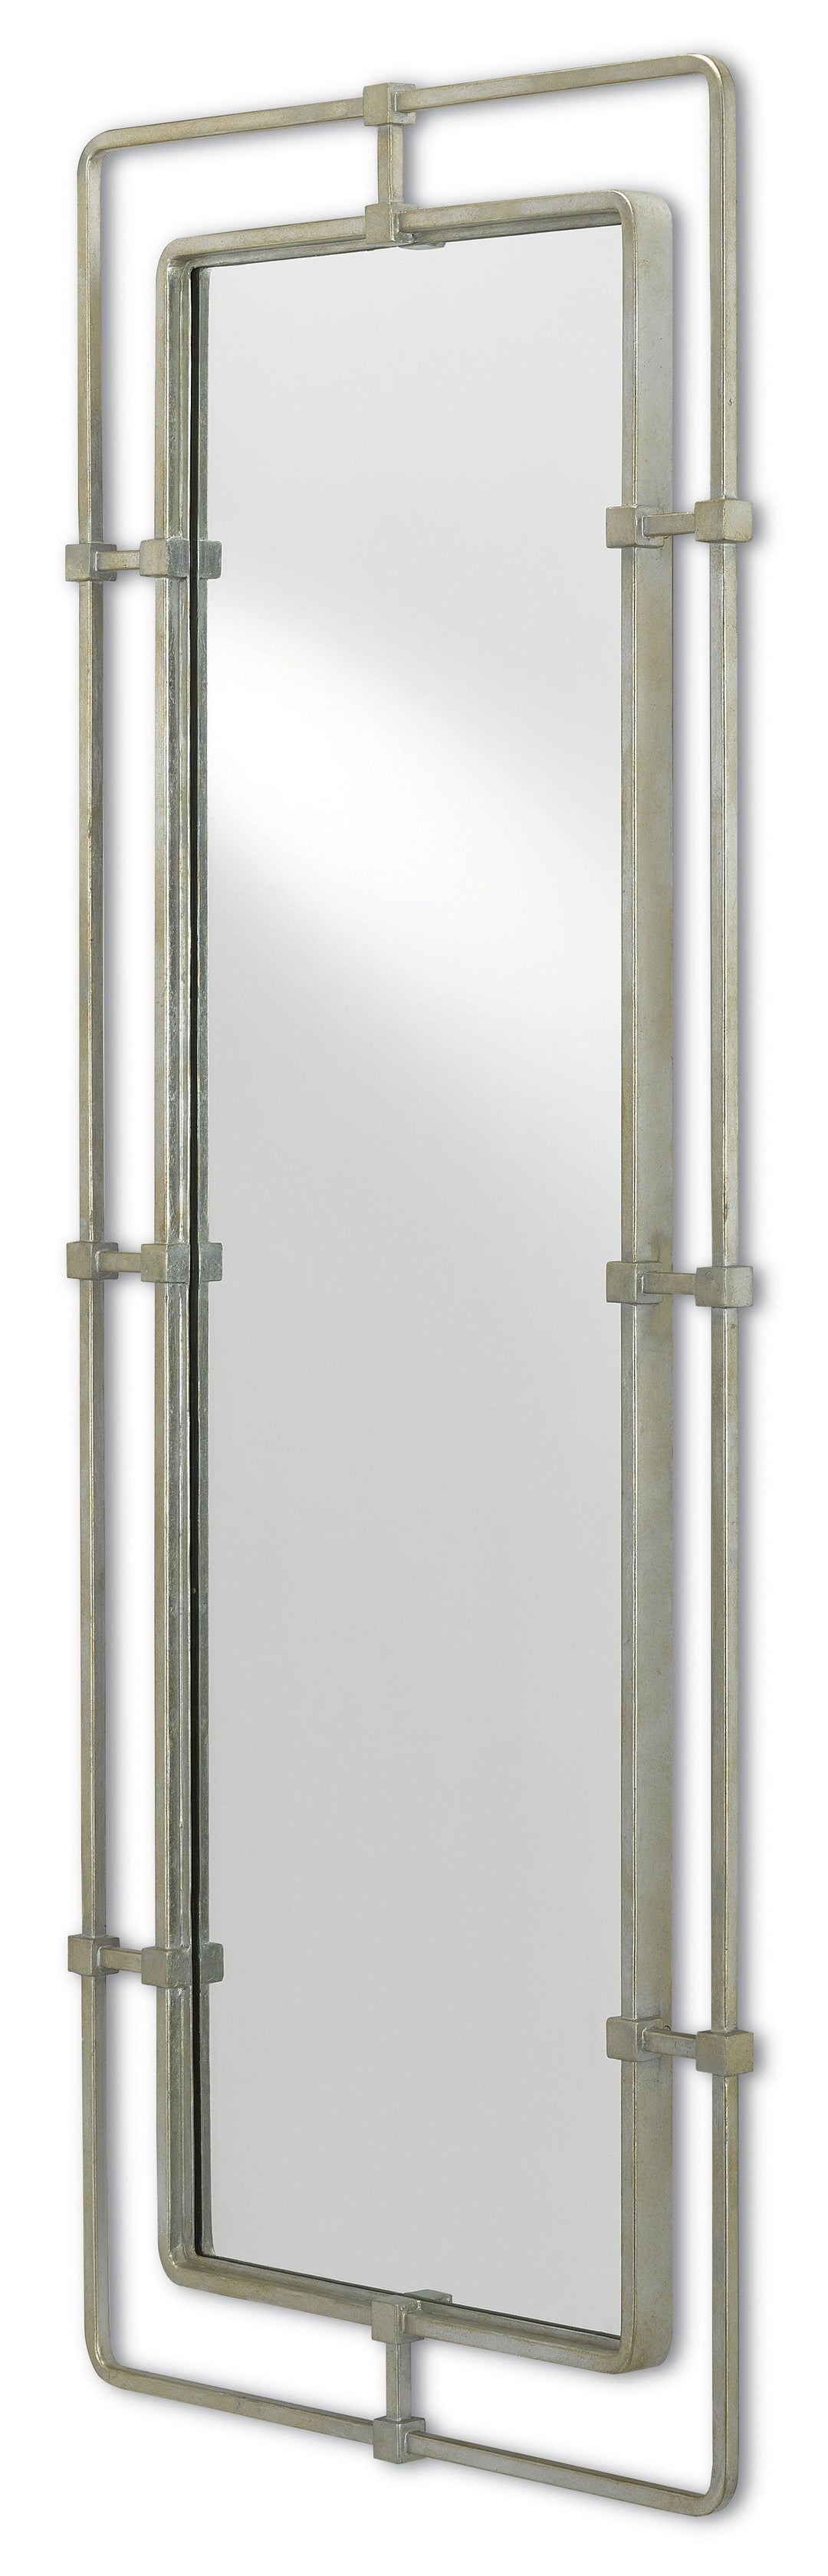 Metro Silver Rectangular Mirror - Casey & Company